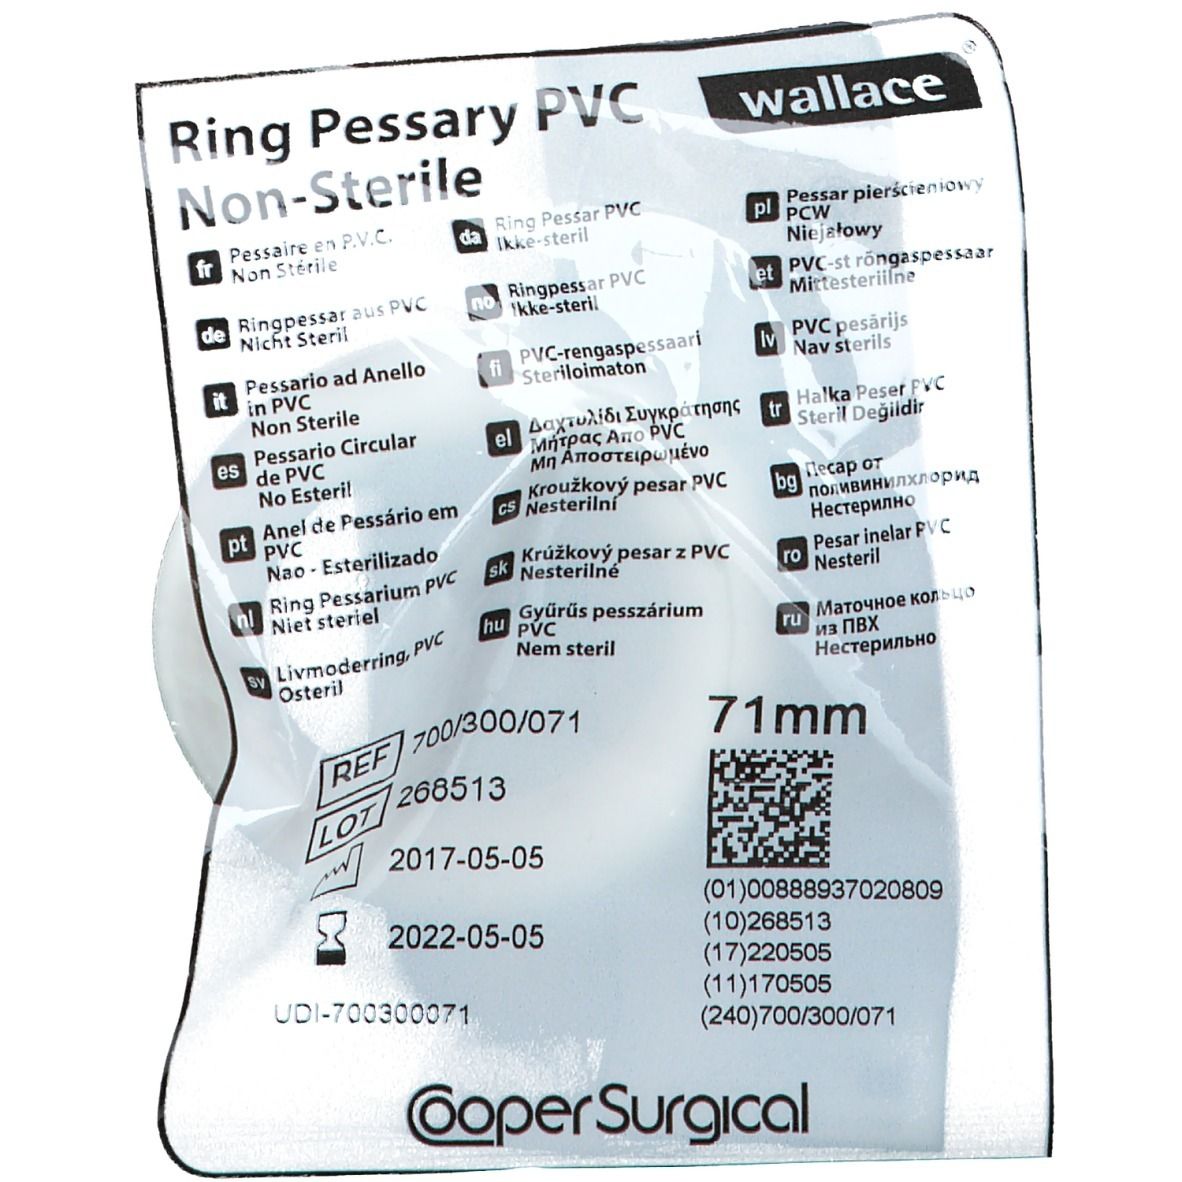 Portex® Pessaire en P.v.c. non stérile